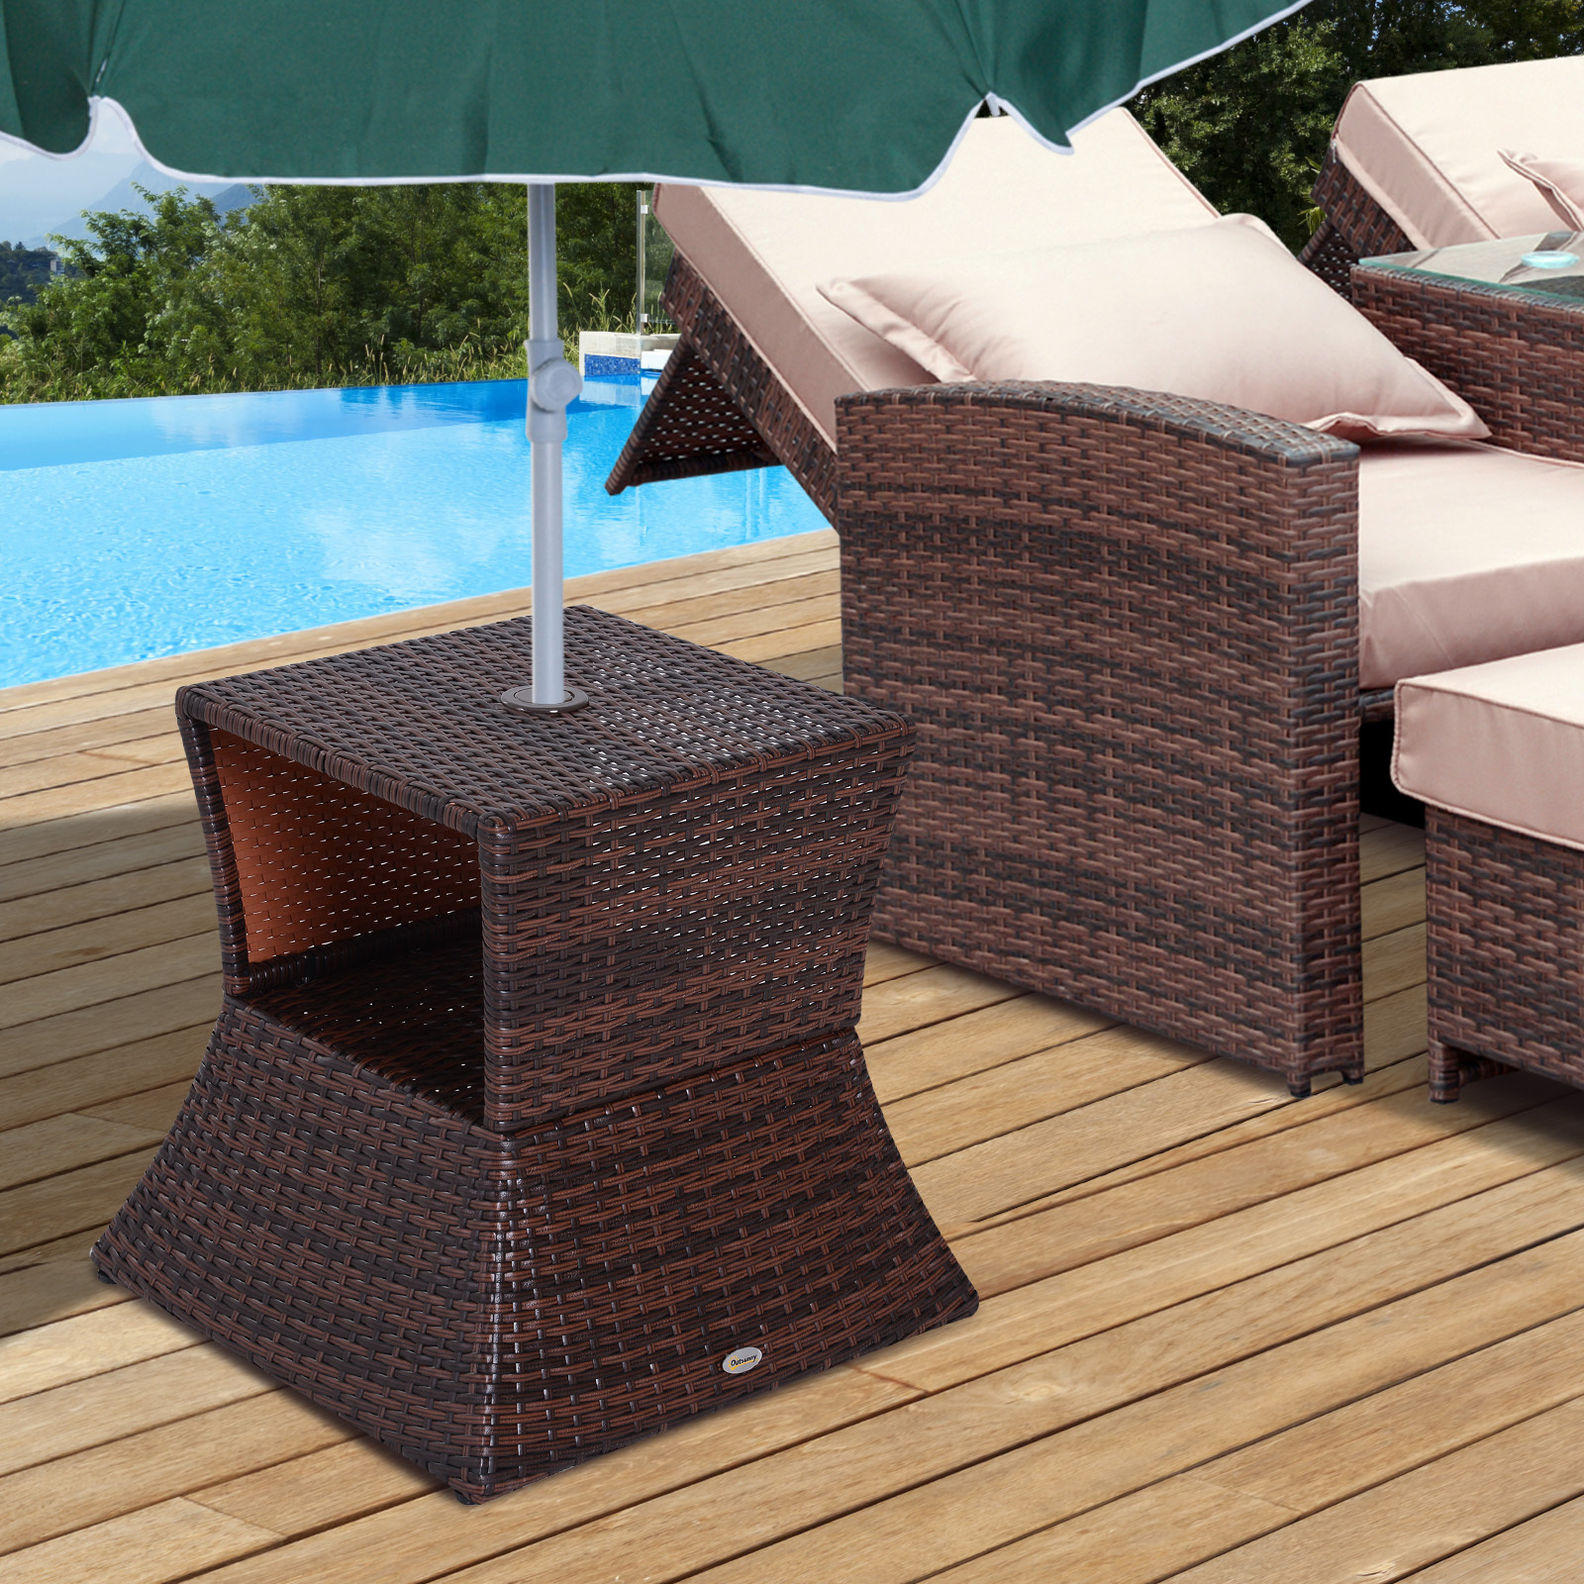 Rattan-Gartentisch mit Sonnenschirm-Halterung | Weltbild.de